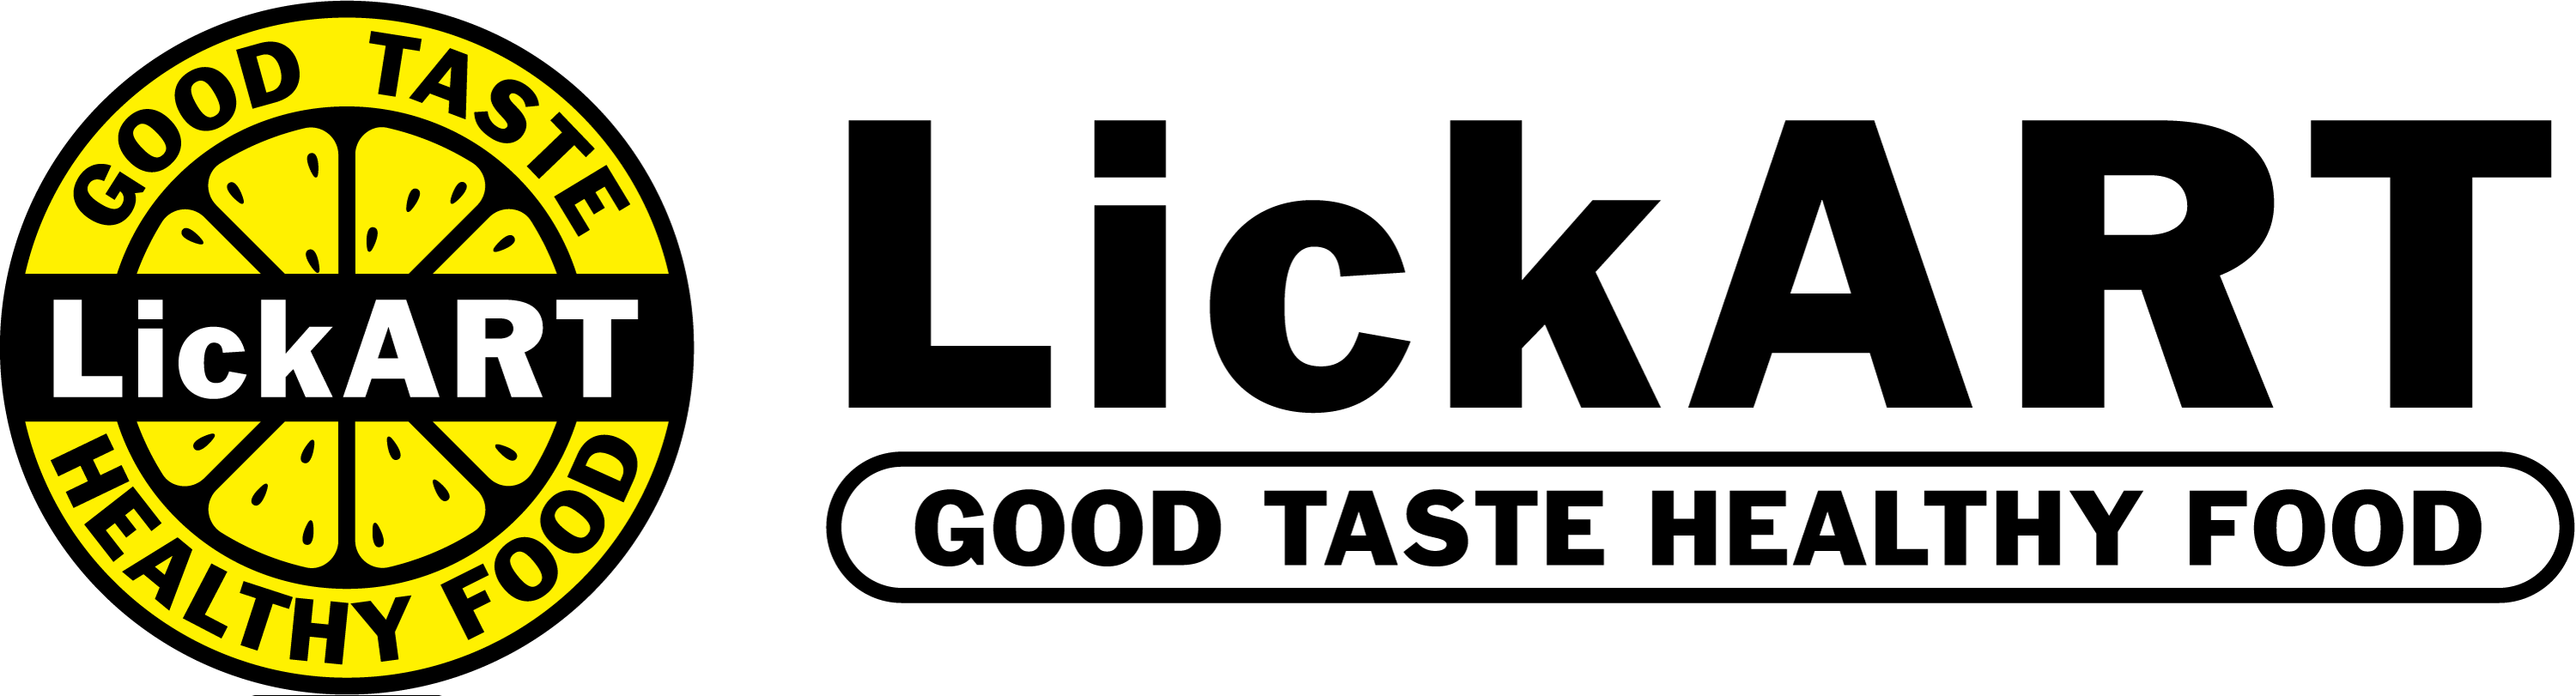 lickart-logo